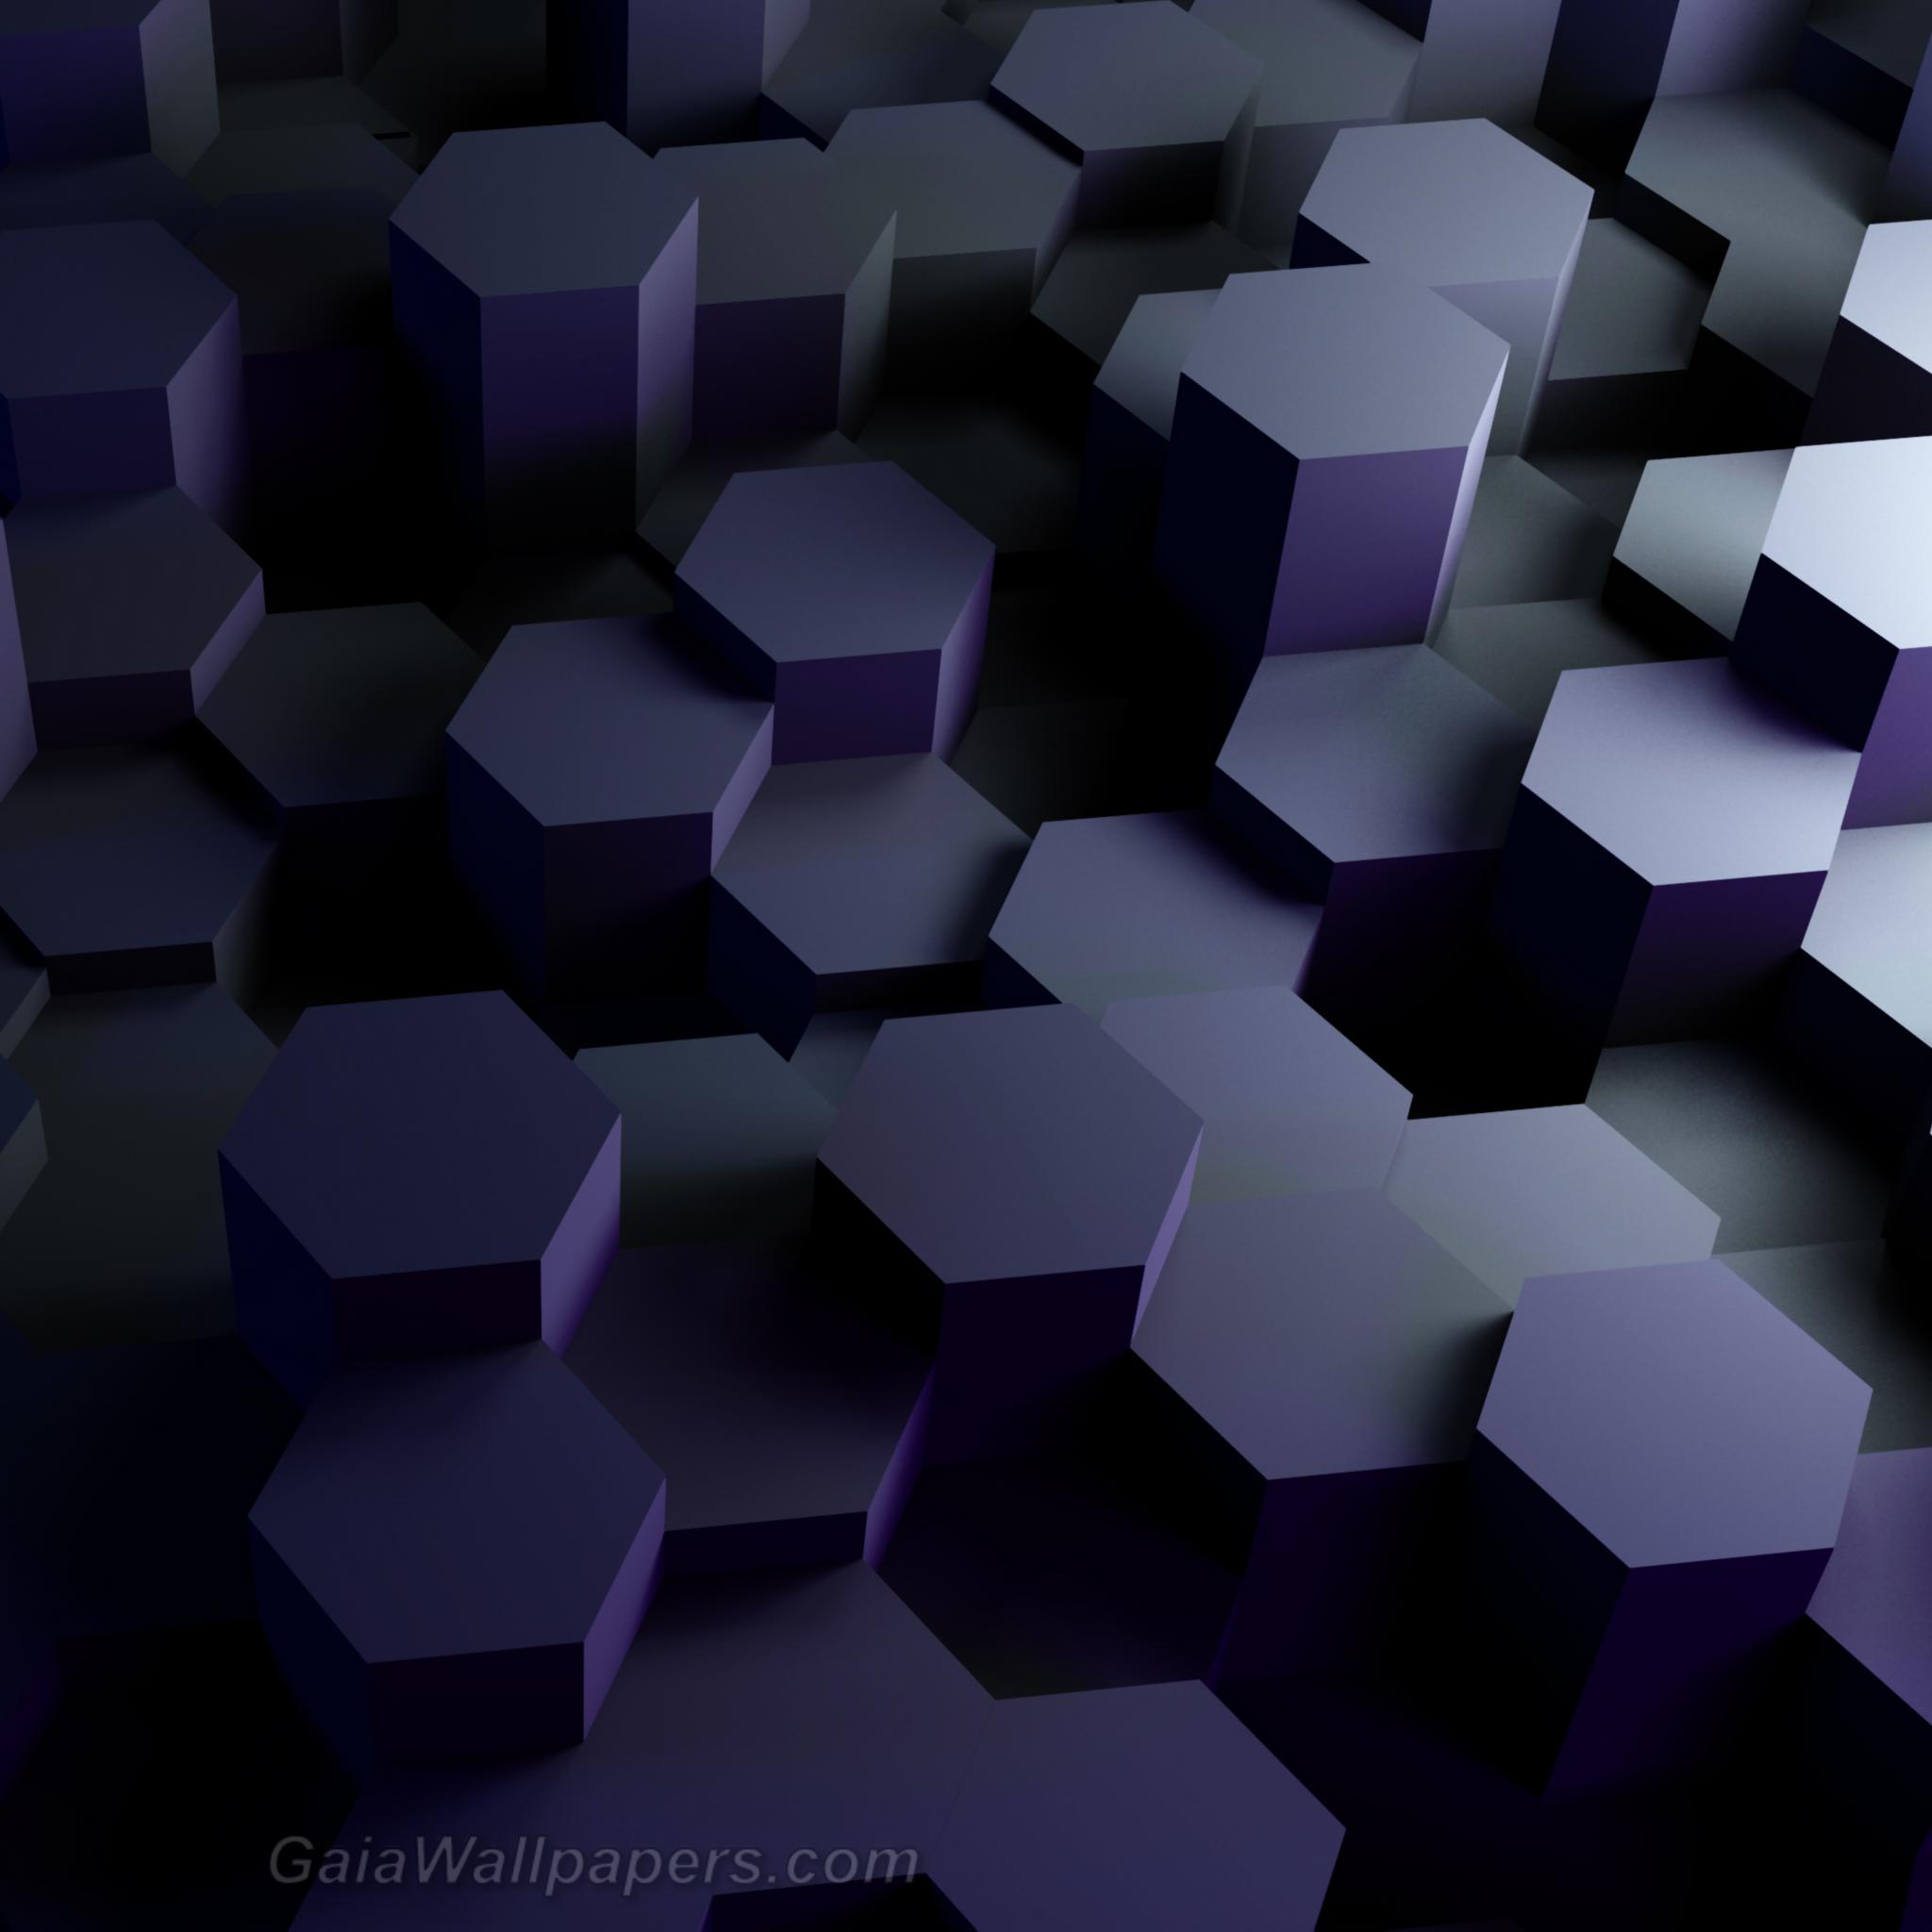 Colonnes d'hexagones entre l'ombre et la lumière - Fonds d'écran gratuits